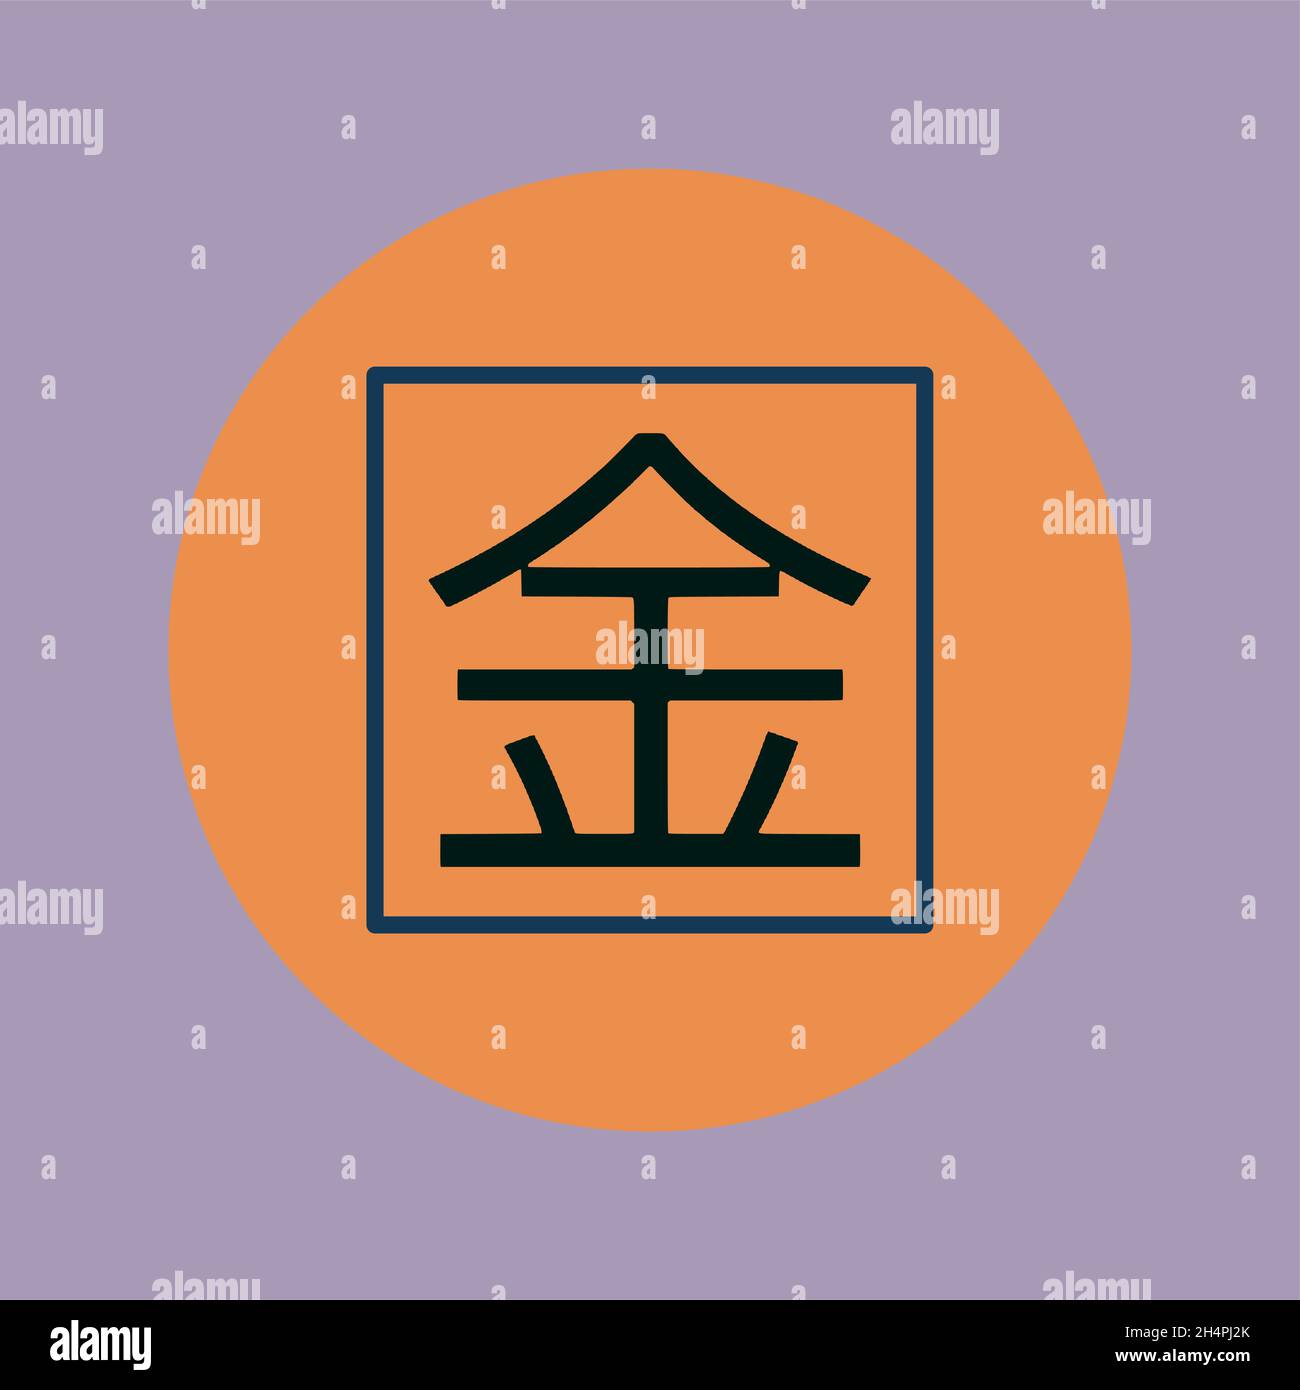 Este símbolo é na verdade um Kanji Japonês, que são usados para simbol